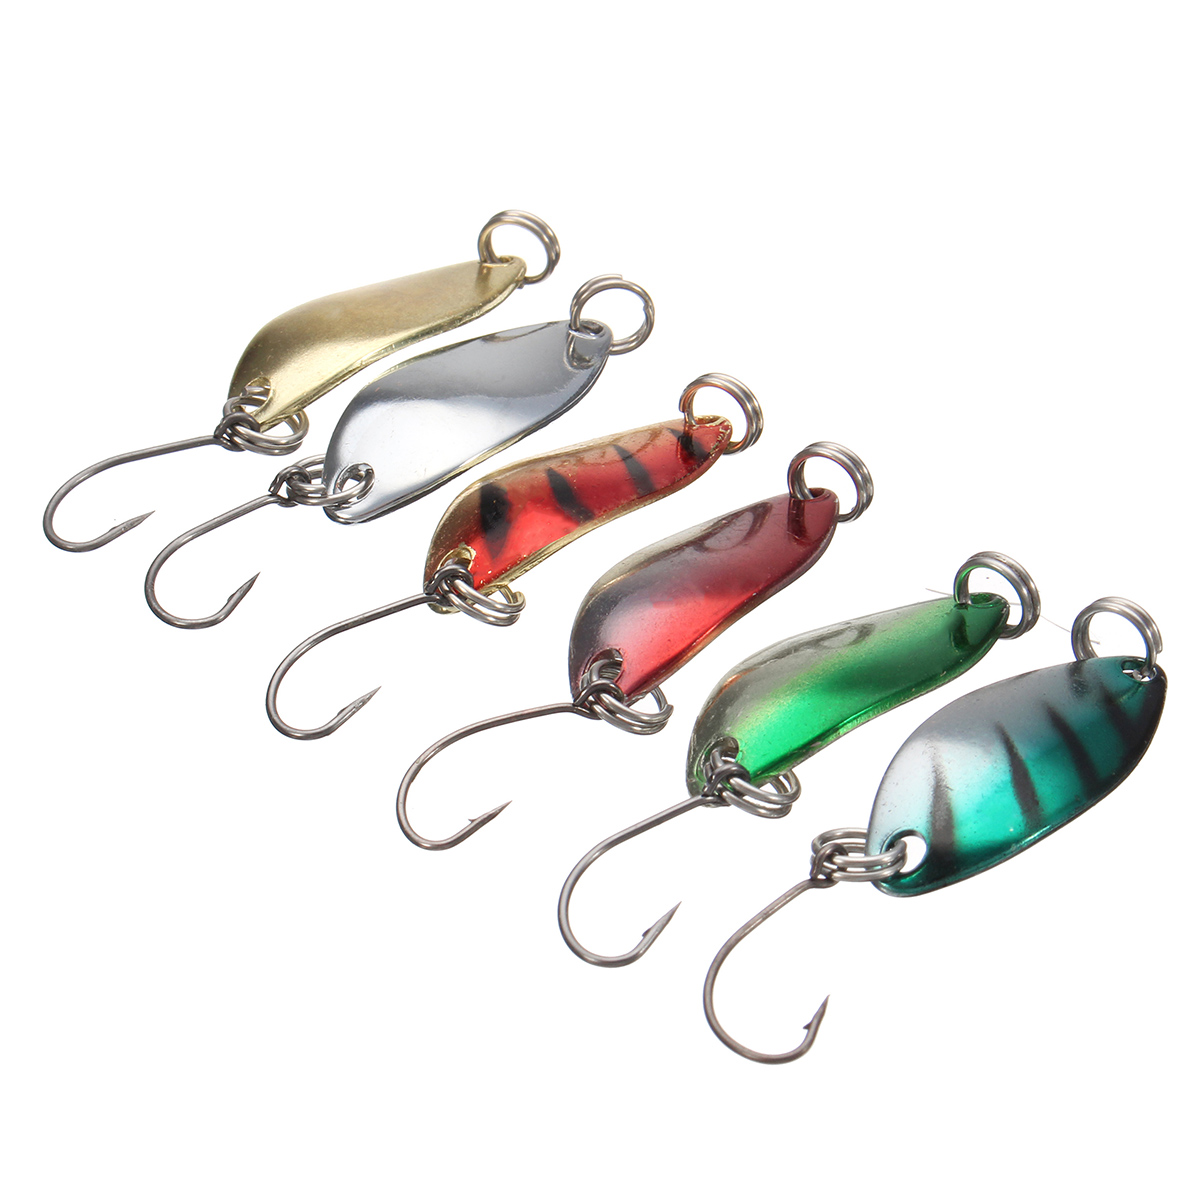 

ZANLURE 6Pcs/Set 3.5cm 3g Spoon Fishing Lure Metal Bait Sequin Paillette Single Hook Set